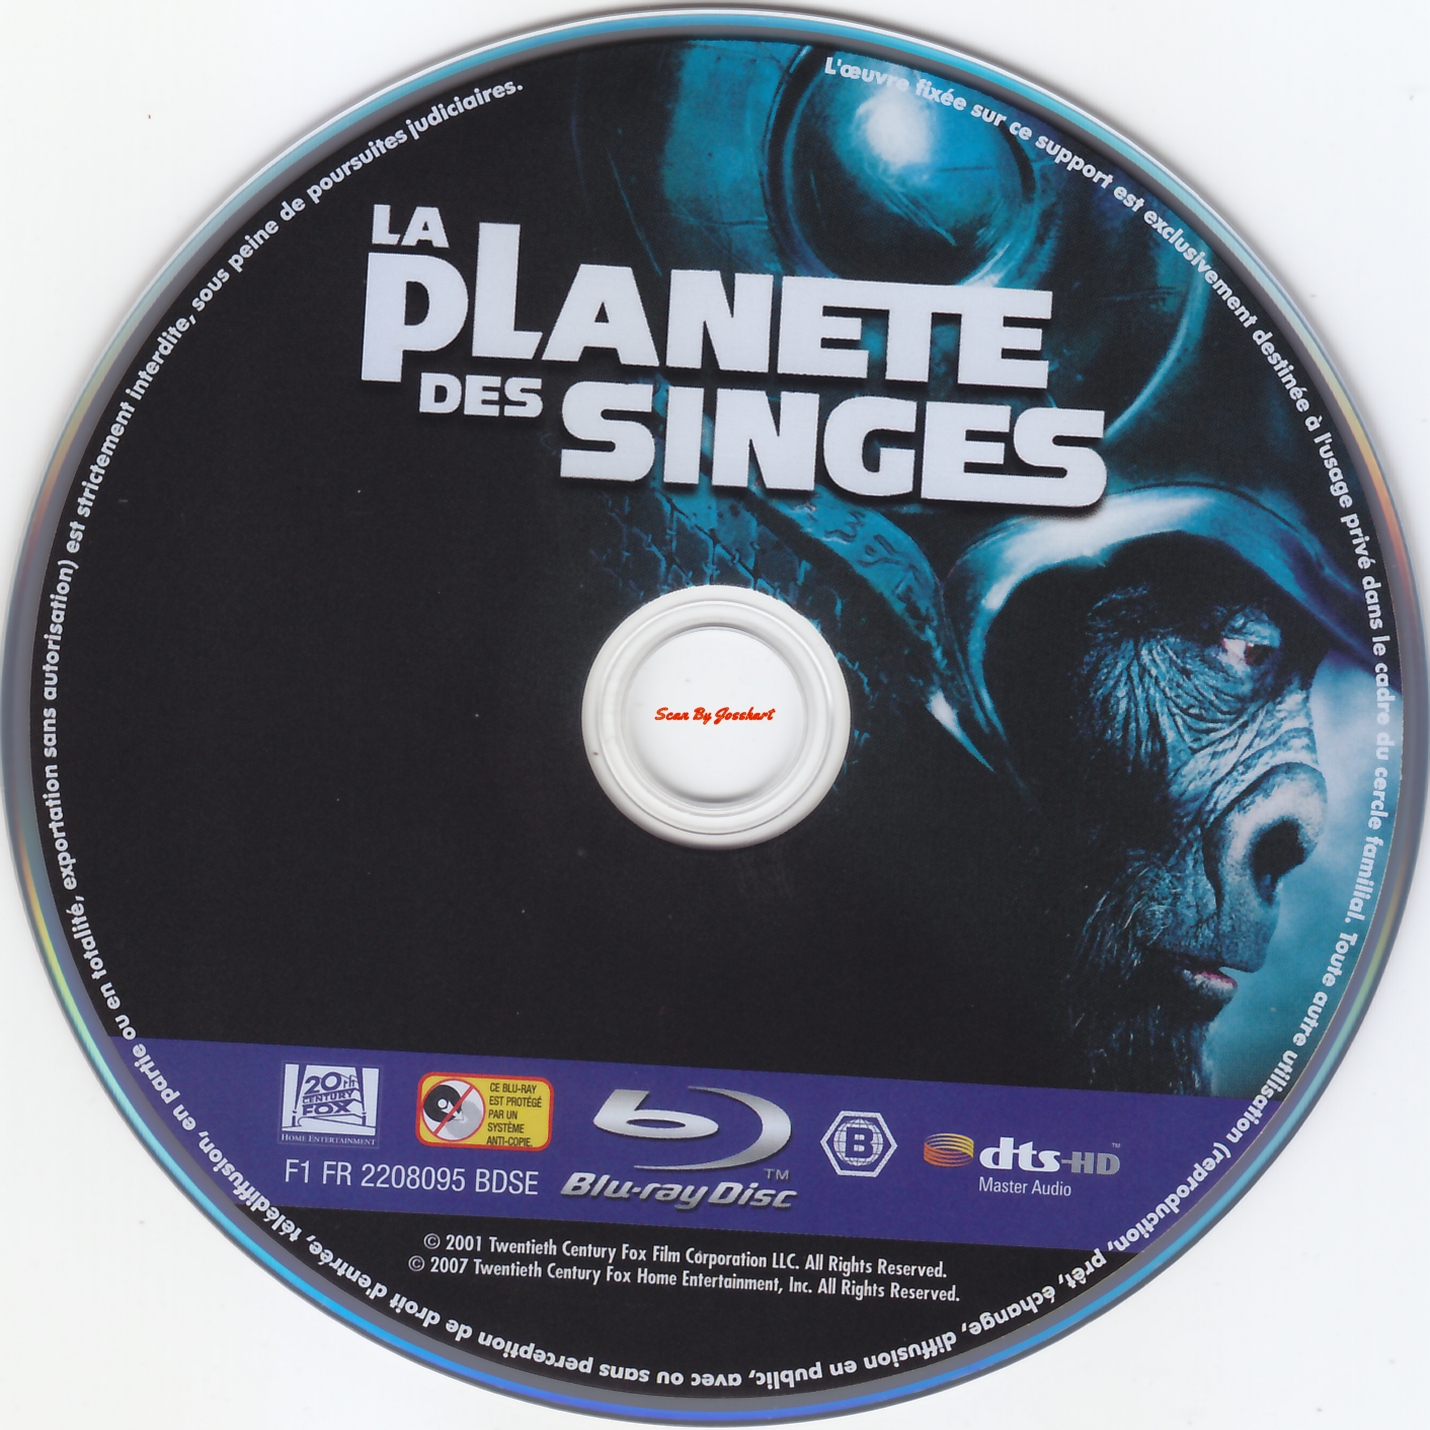 La planete des singes (2001) (BLU-RAY)